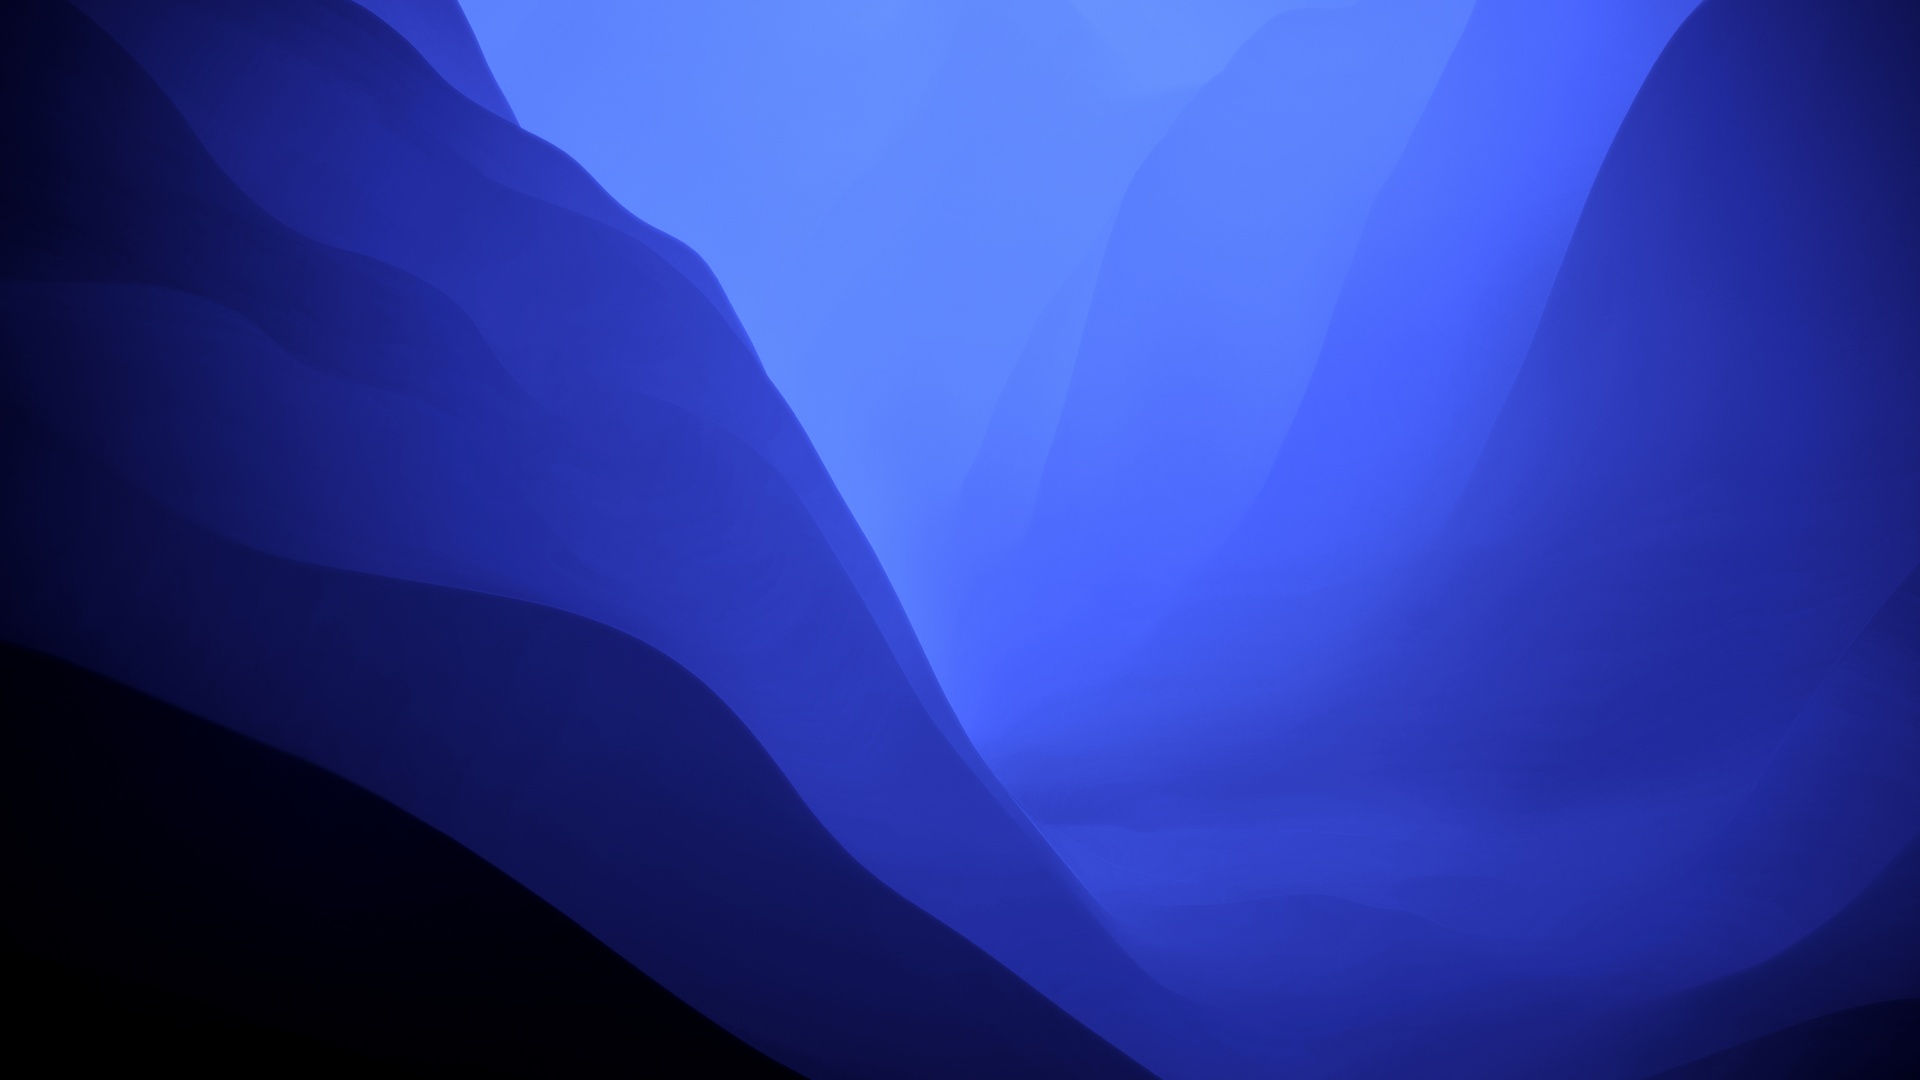 Khám phá hình nền macOS Monterey 4K tuyệt đẹp với chất lượng cao và màu sắc xanh dương đầy cuốn hút. Chế độ tối và Gradient #5895 sẽ mang lại cho bạn một trải nghiệm tuyệt vời trên màn hình của bạn! 